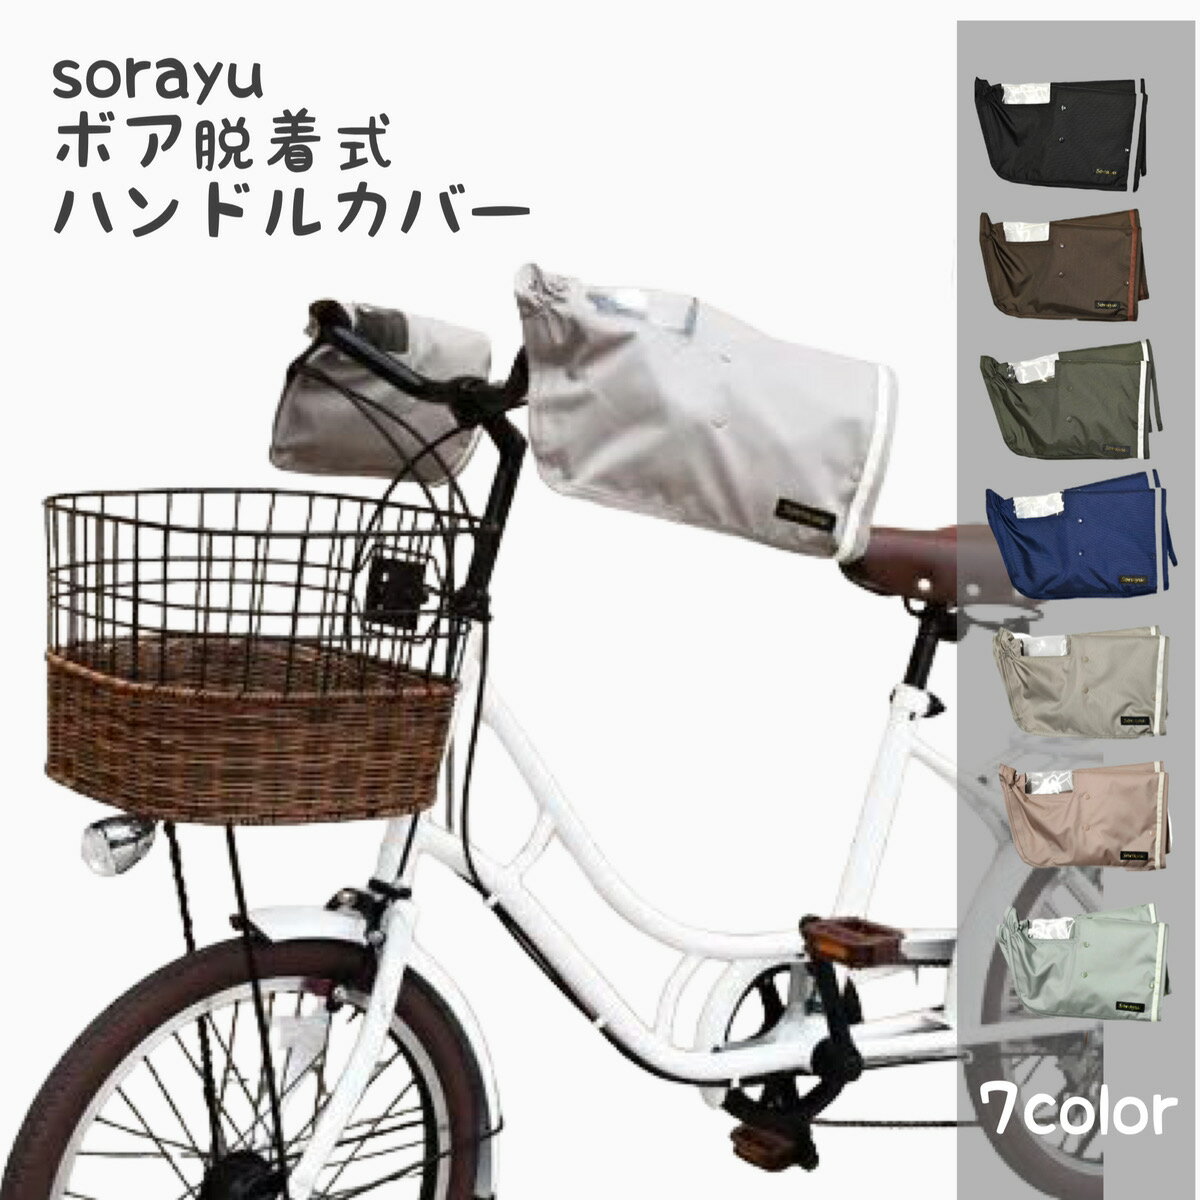 SORAYU 自転車 ハンドルカバー 防寒 電動自転車対応 2WAY 取り外し可能なボア付き パネルスイッチがクリアに見えるので安心 オールシーズン対応 